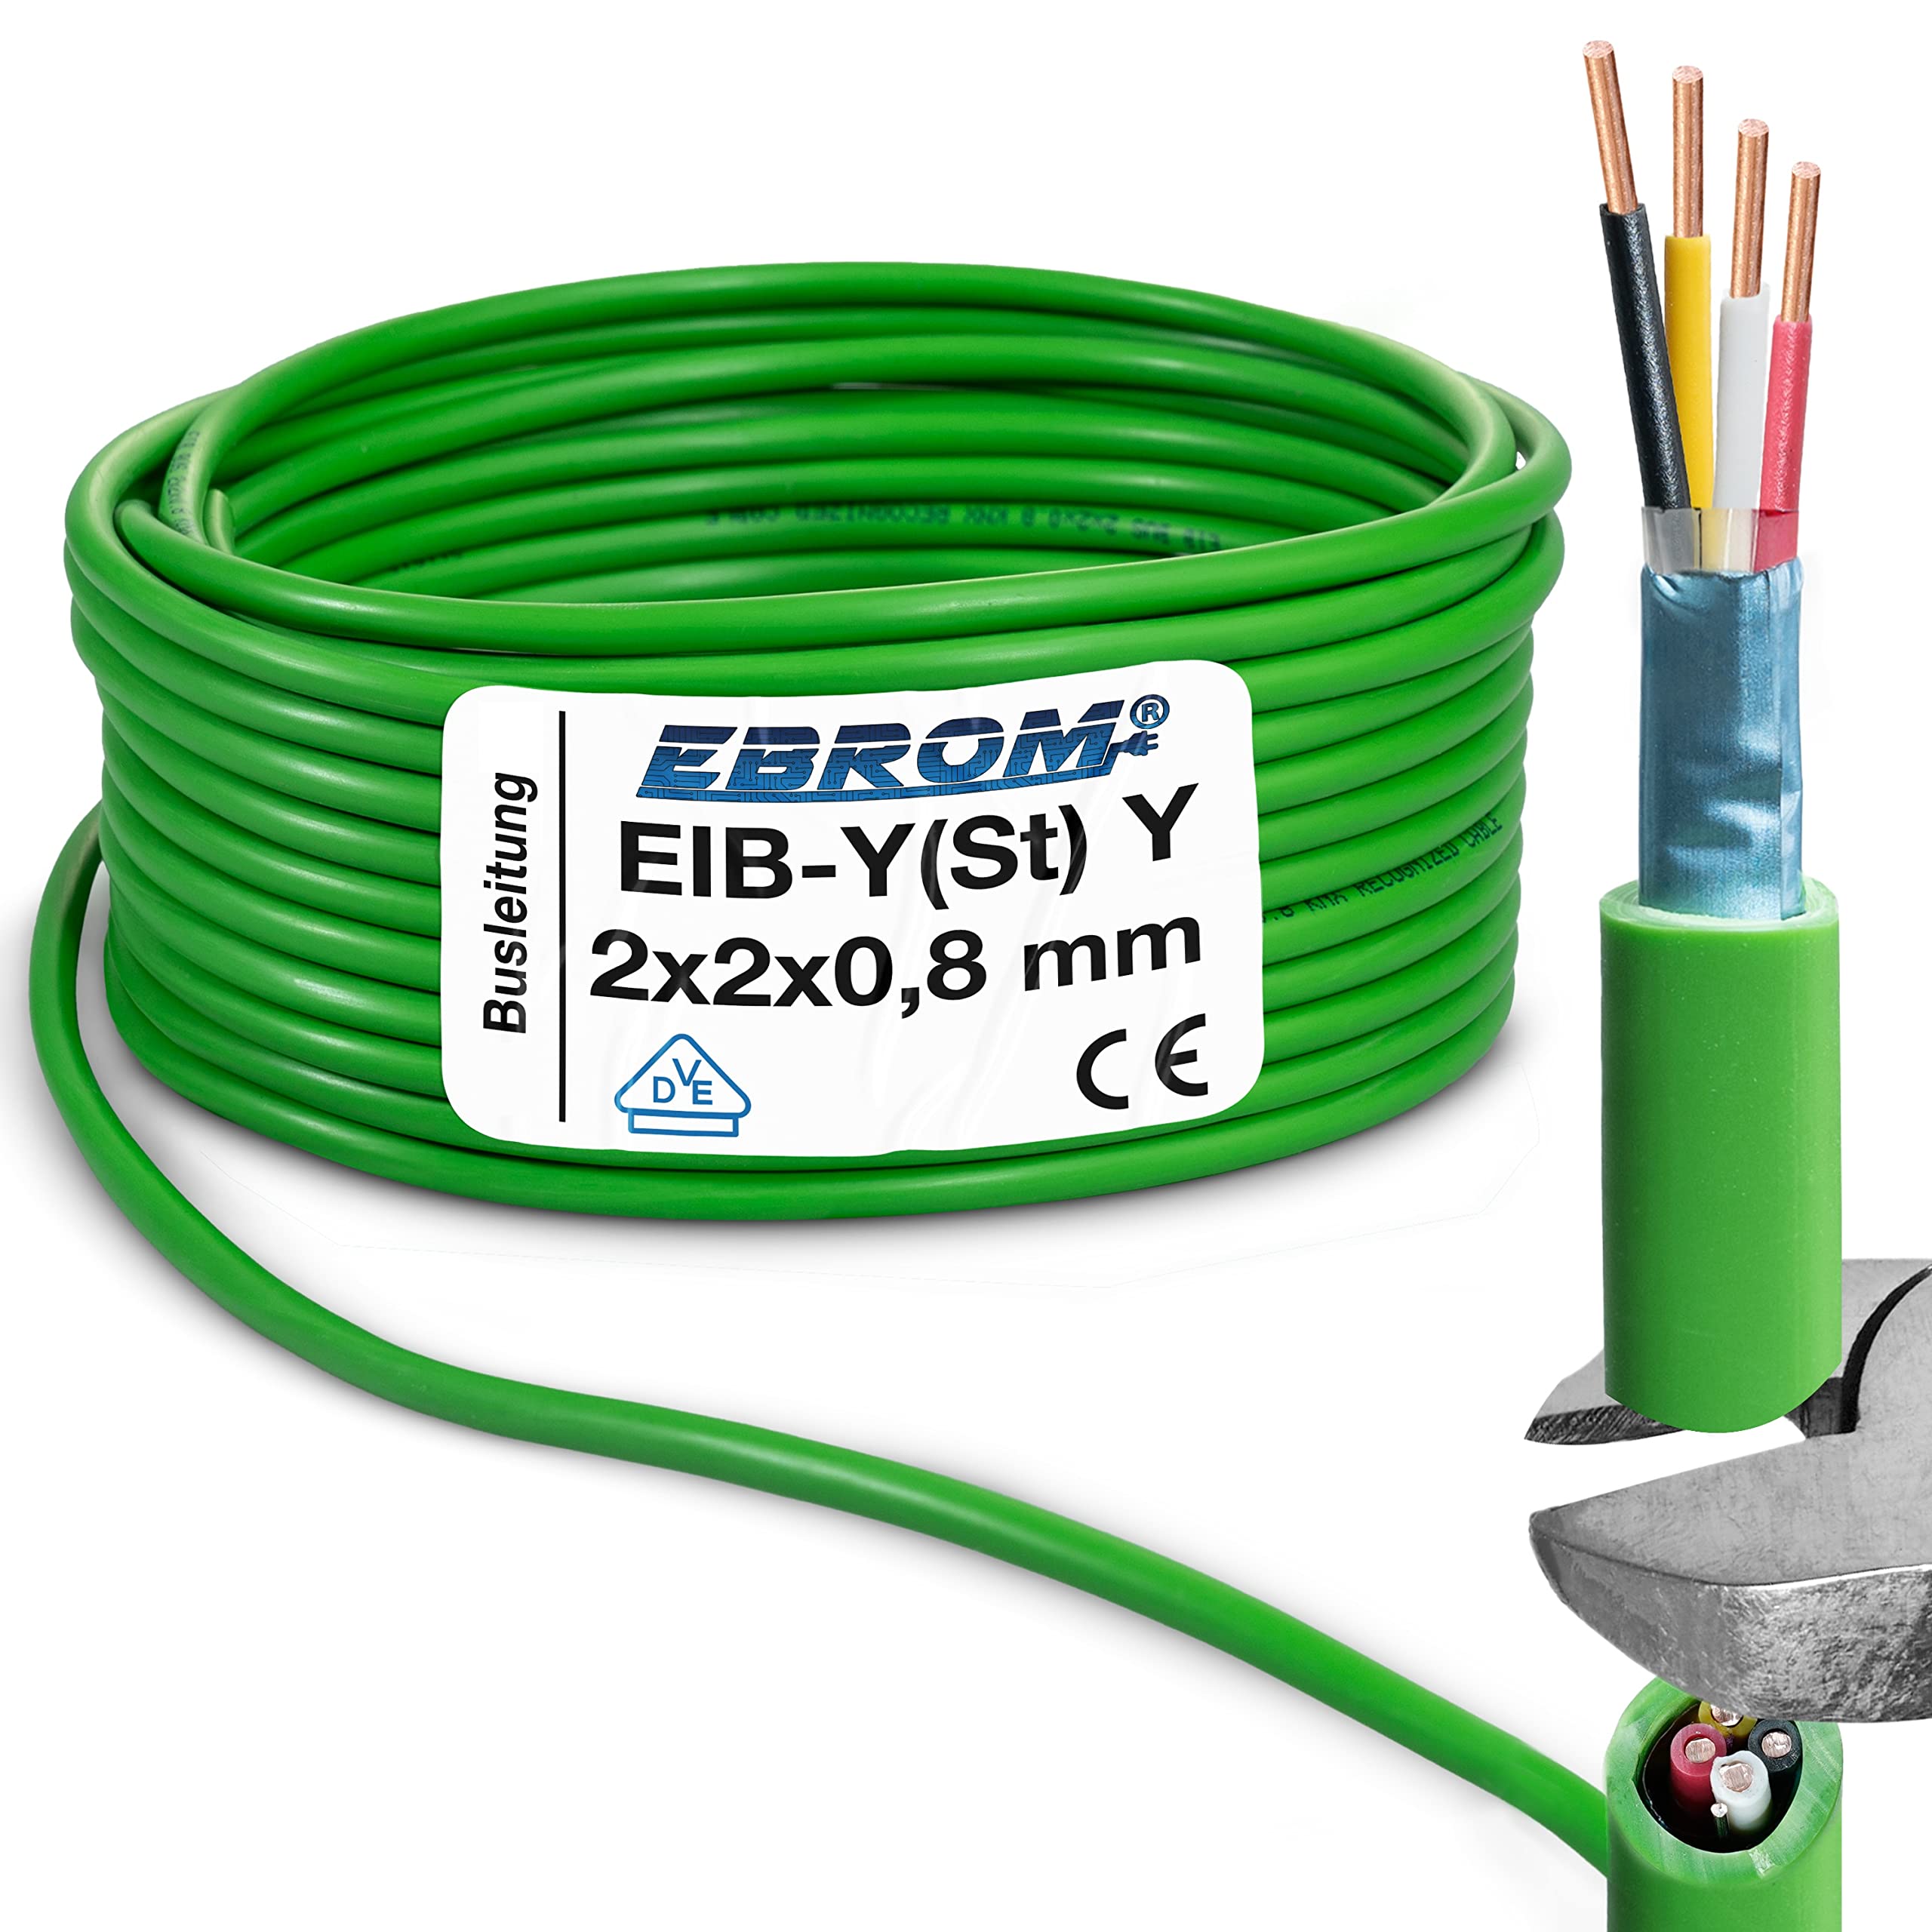 EIB Busleitung Kabel EIB-Y(St) Y 2x2x0,8 mm grün Datenleitung/Datenkabel Installationsbusleitung Telekommunikationskabel – viele Längen - von 5 Meter bis 100 Meter – Ihre ausgewählte Länge: 50 Meter